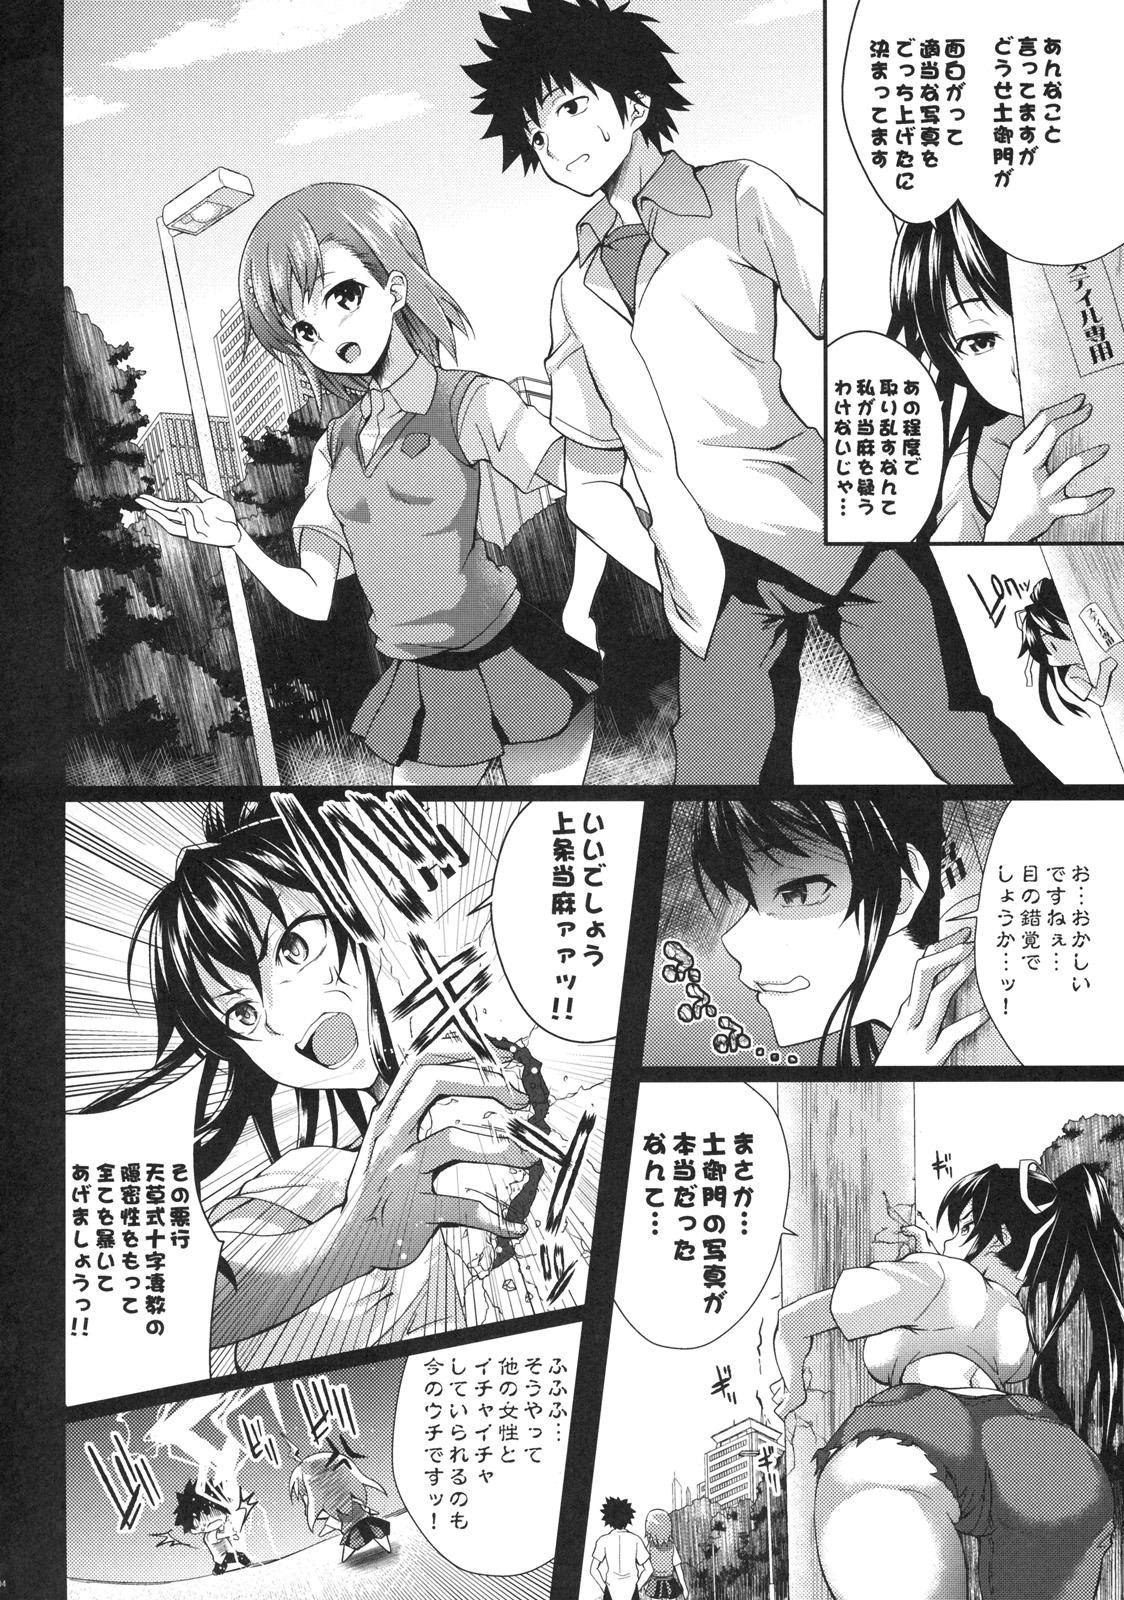 Sapphicerotica Amakusa Moyou na Roku % - Toaru majutsu no index Shemale Porn - Page 3